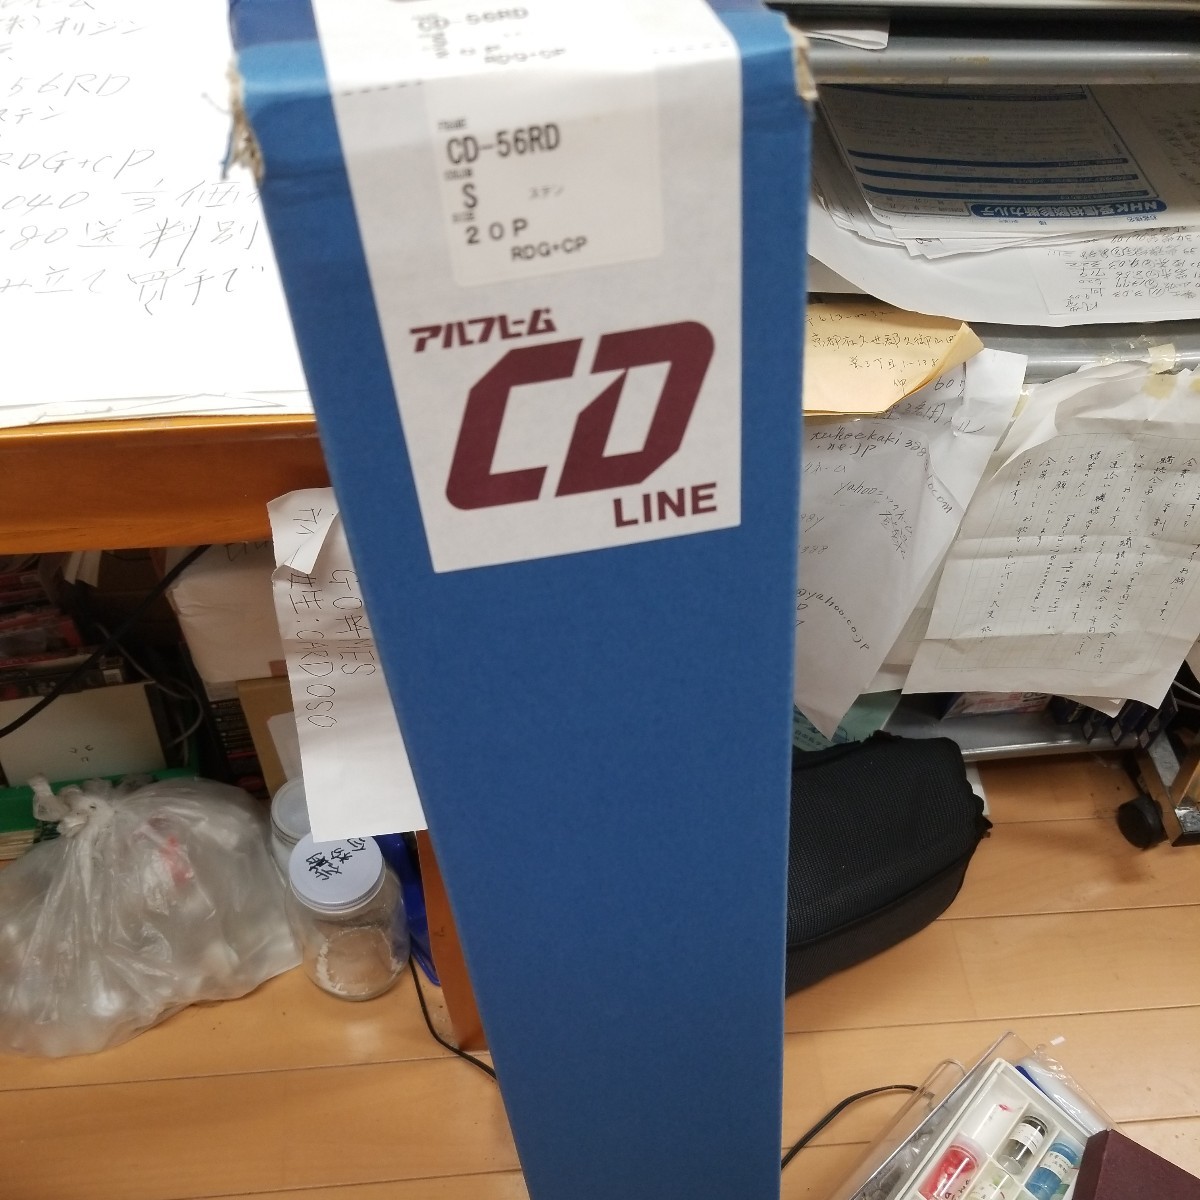 株式会社東京オリジンステンレスカラーCD-56RDステン20p製造元から仕入れました。販売価格29040のところ3分の１価格です。破格値です。_画像3